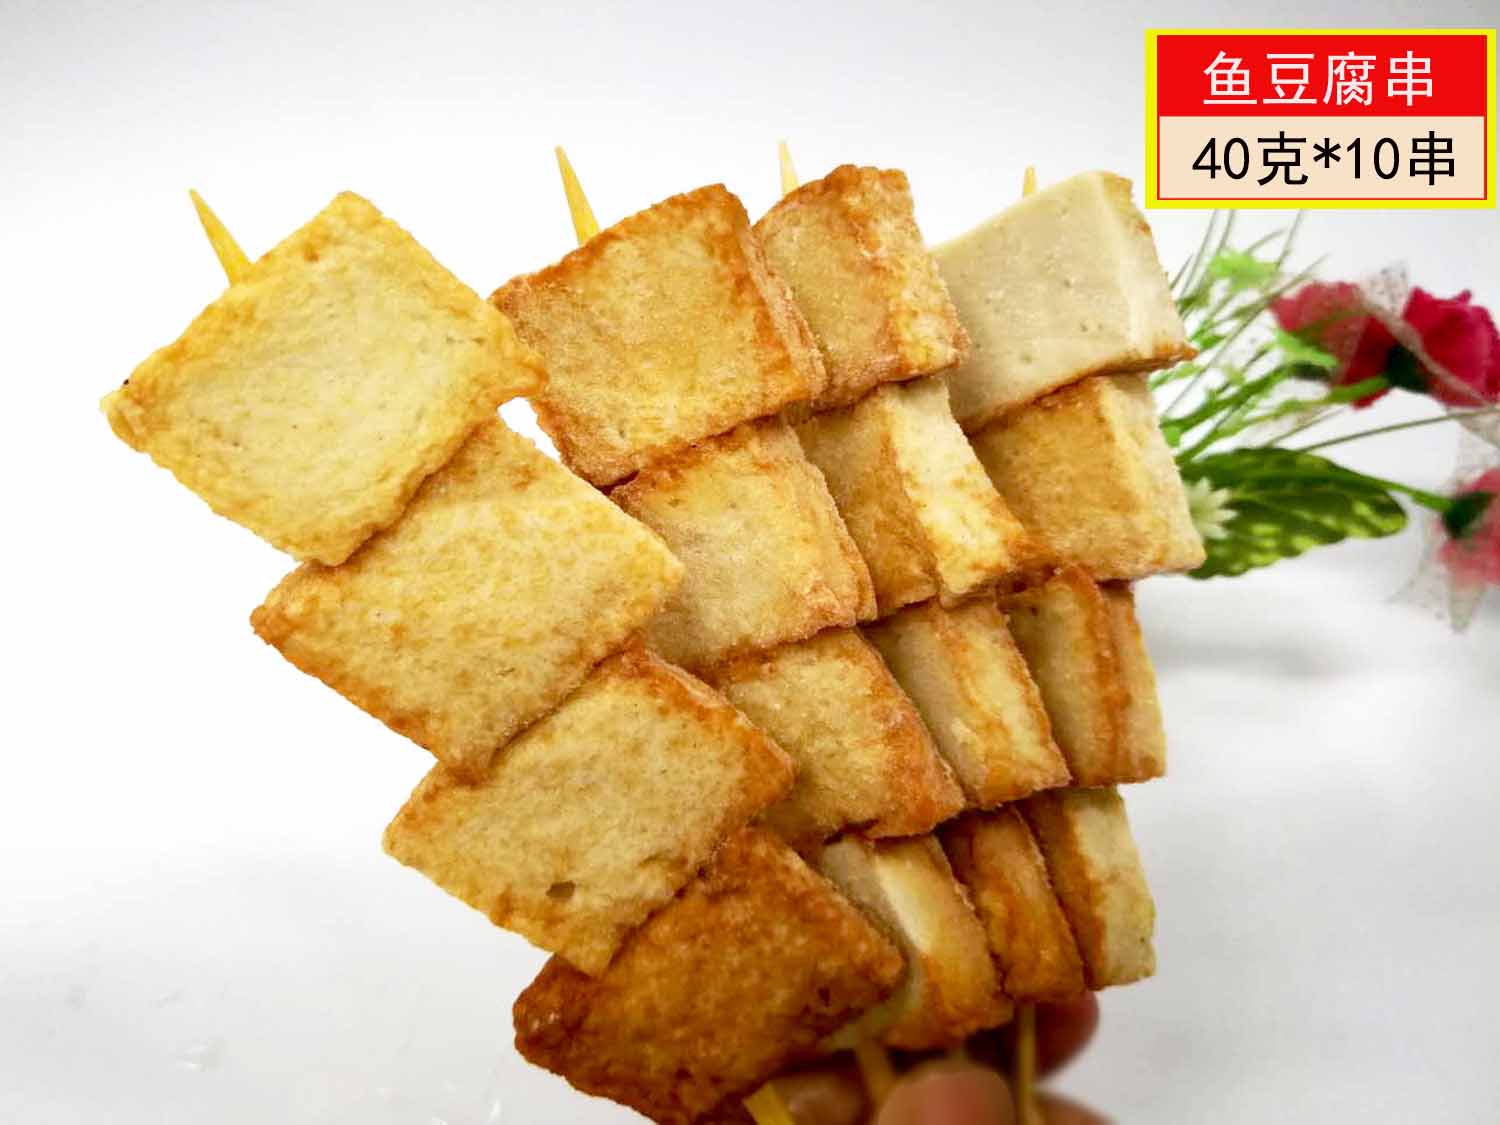 B关东煮食材鱼豆腐串10串串鱼付鱼肉块丸子鱼蛋冷冻食品火锅料理